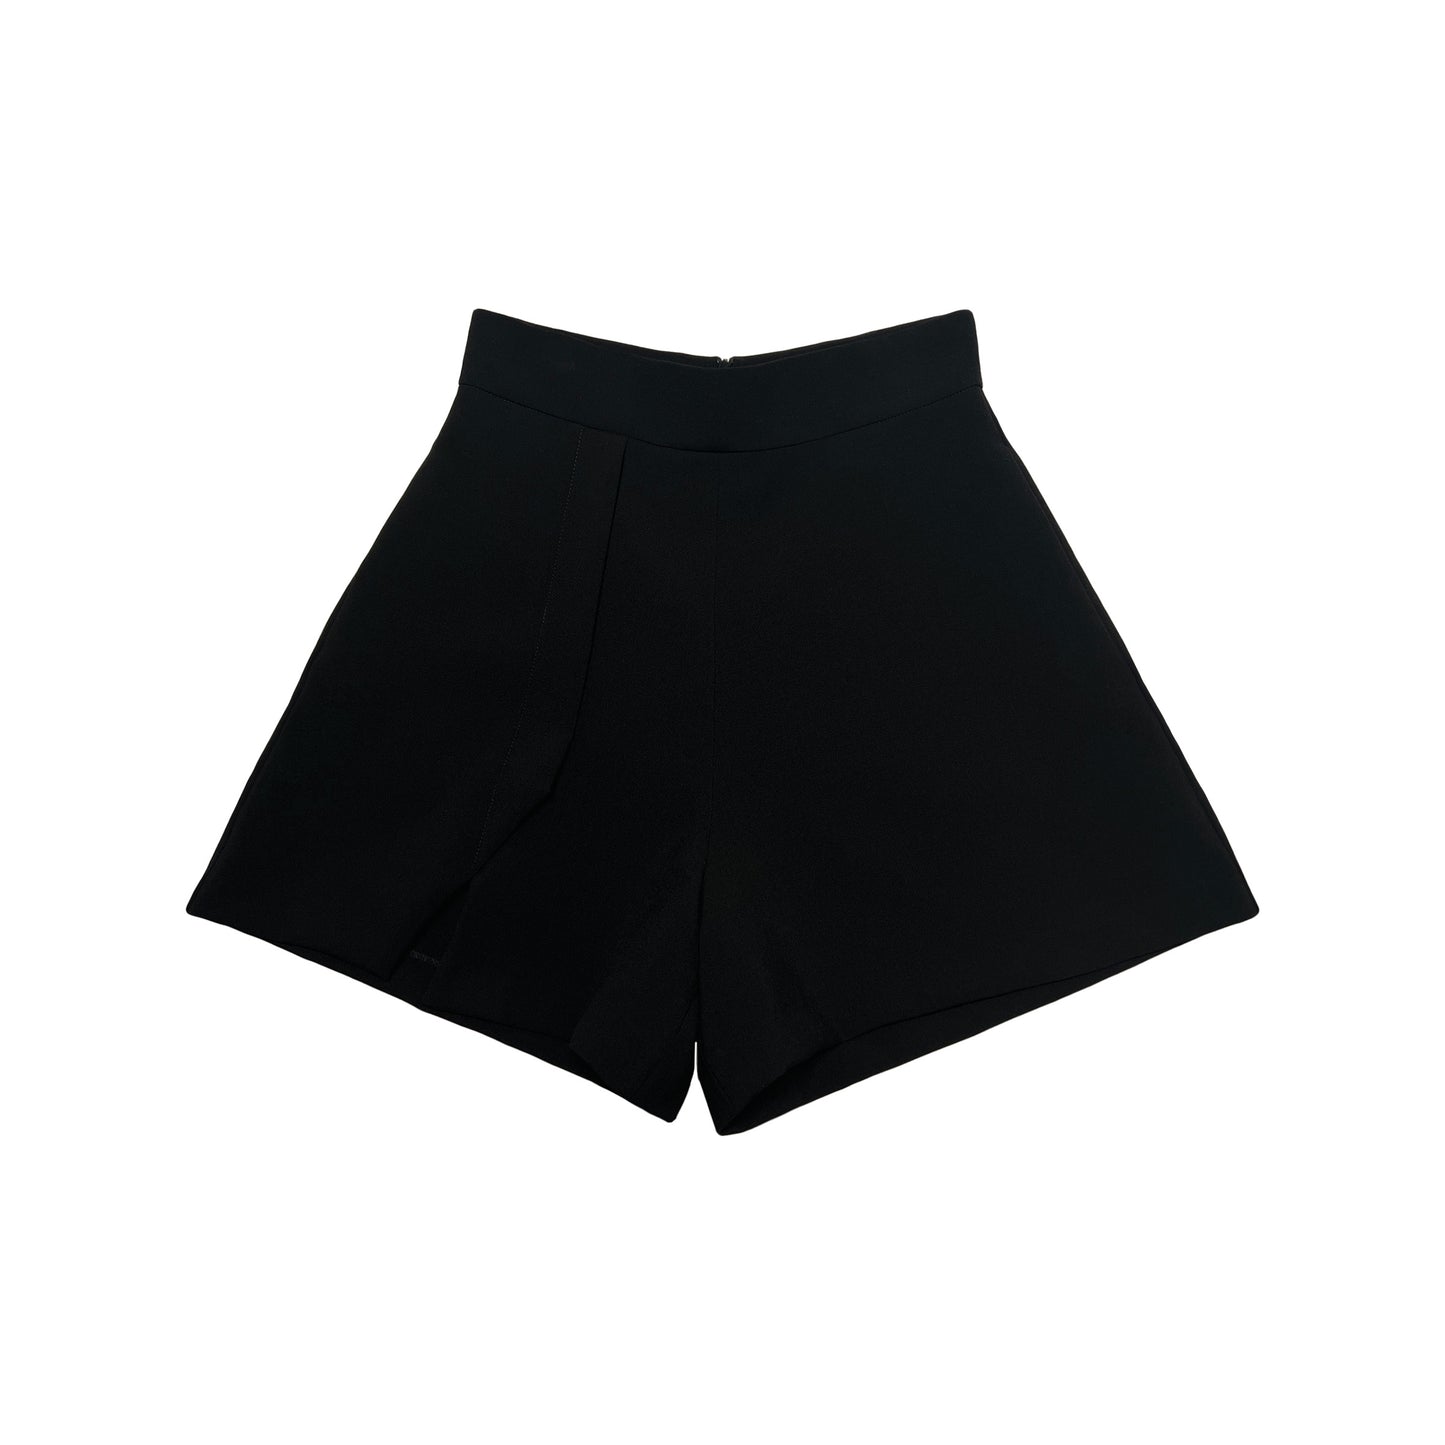 NOIZ NP5 High-Waisted Cut Out Shorts